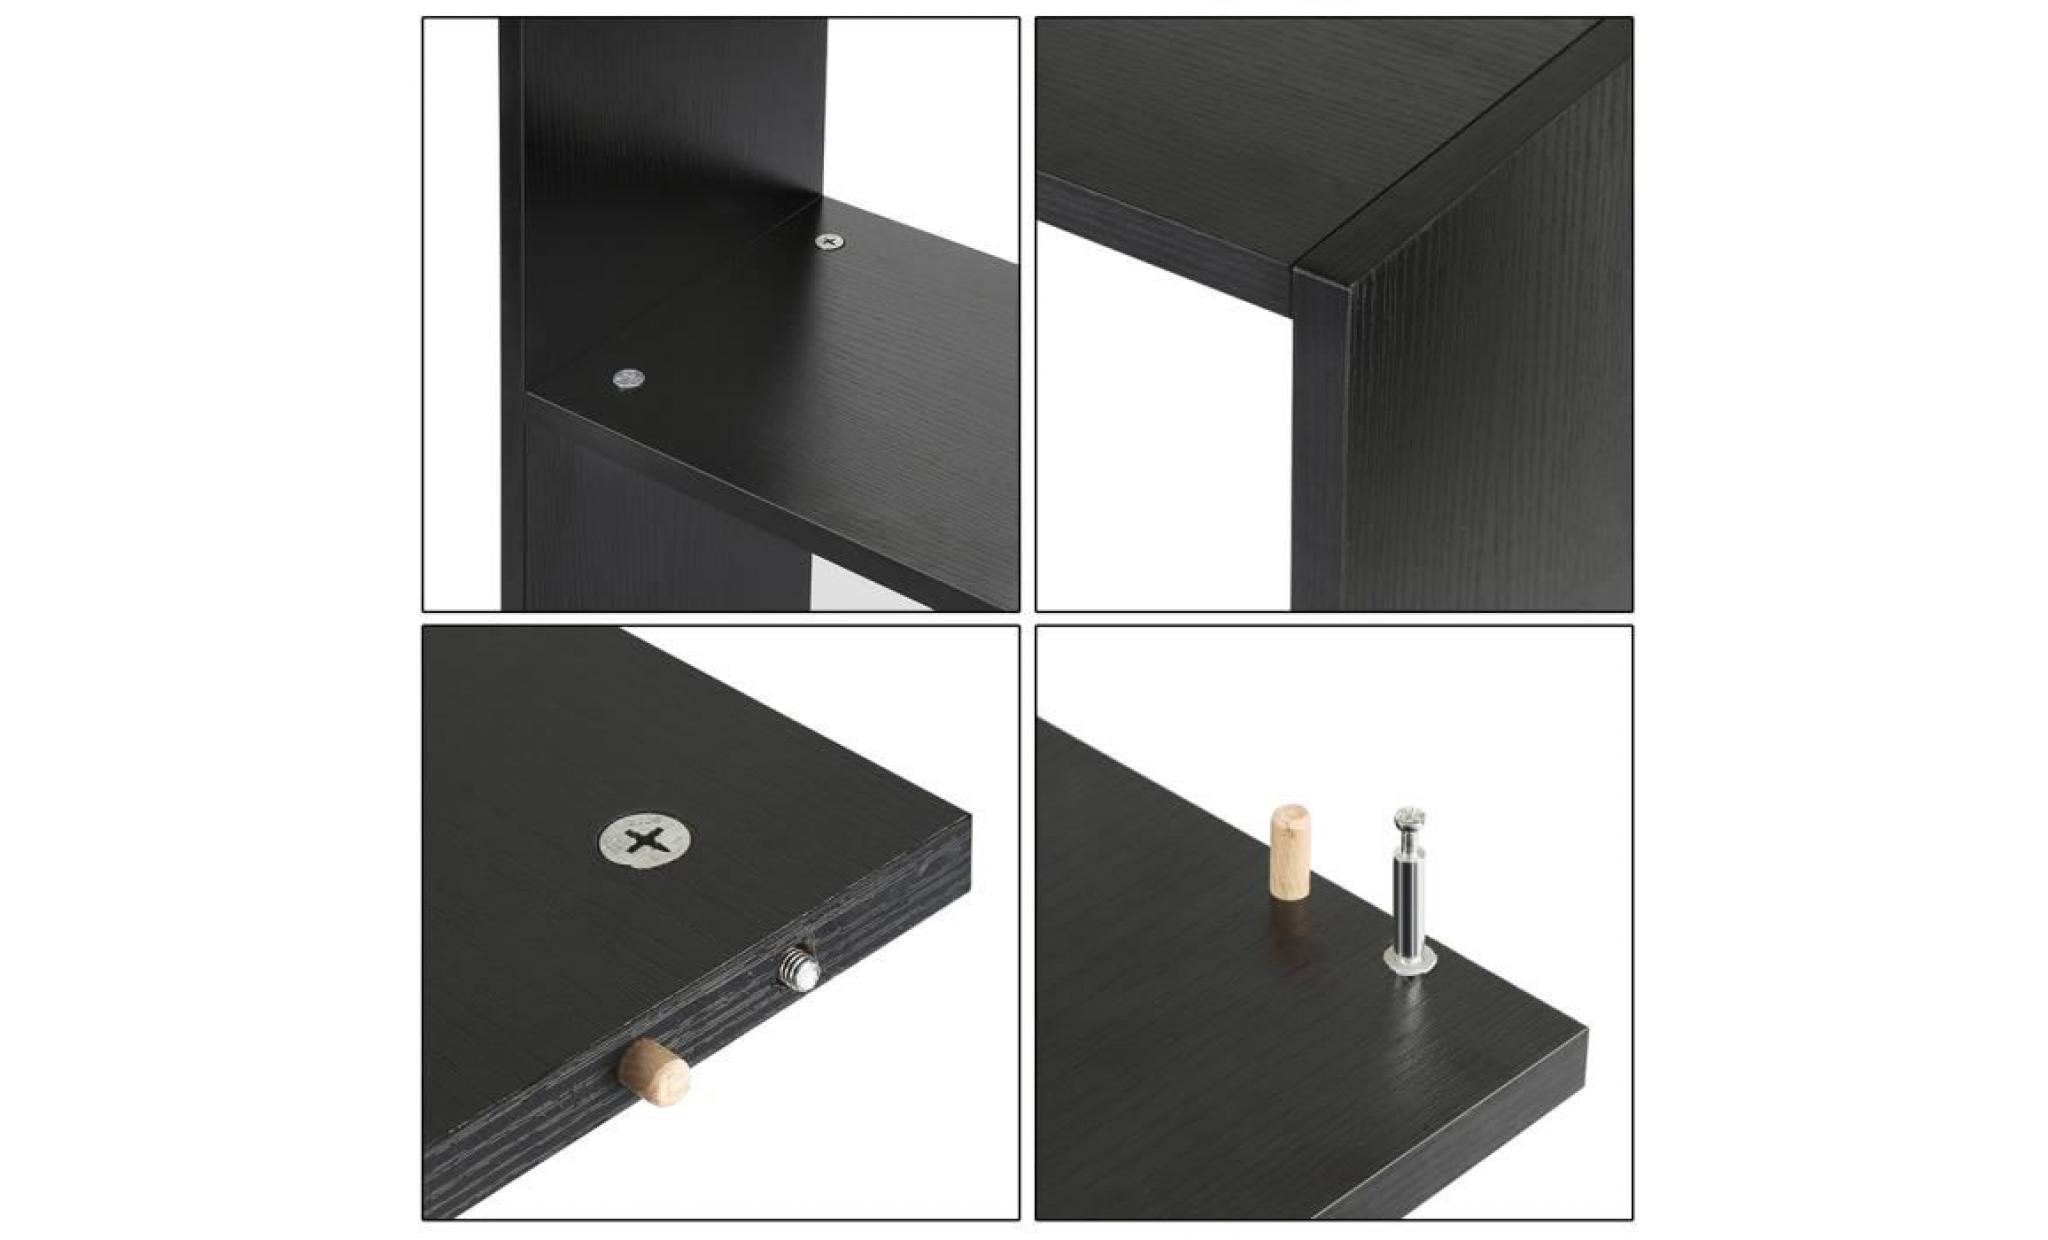 meuble multifonctionnel   collect 3 en 1   noir   construction du meuble innovante pas cher